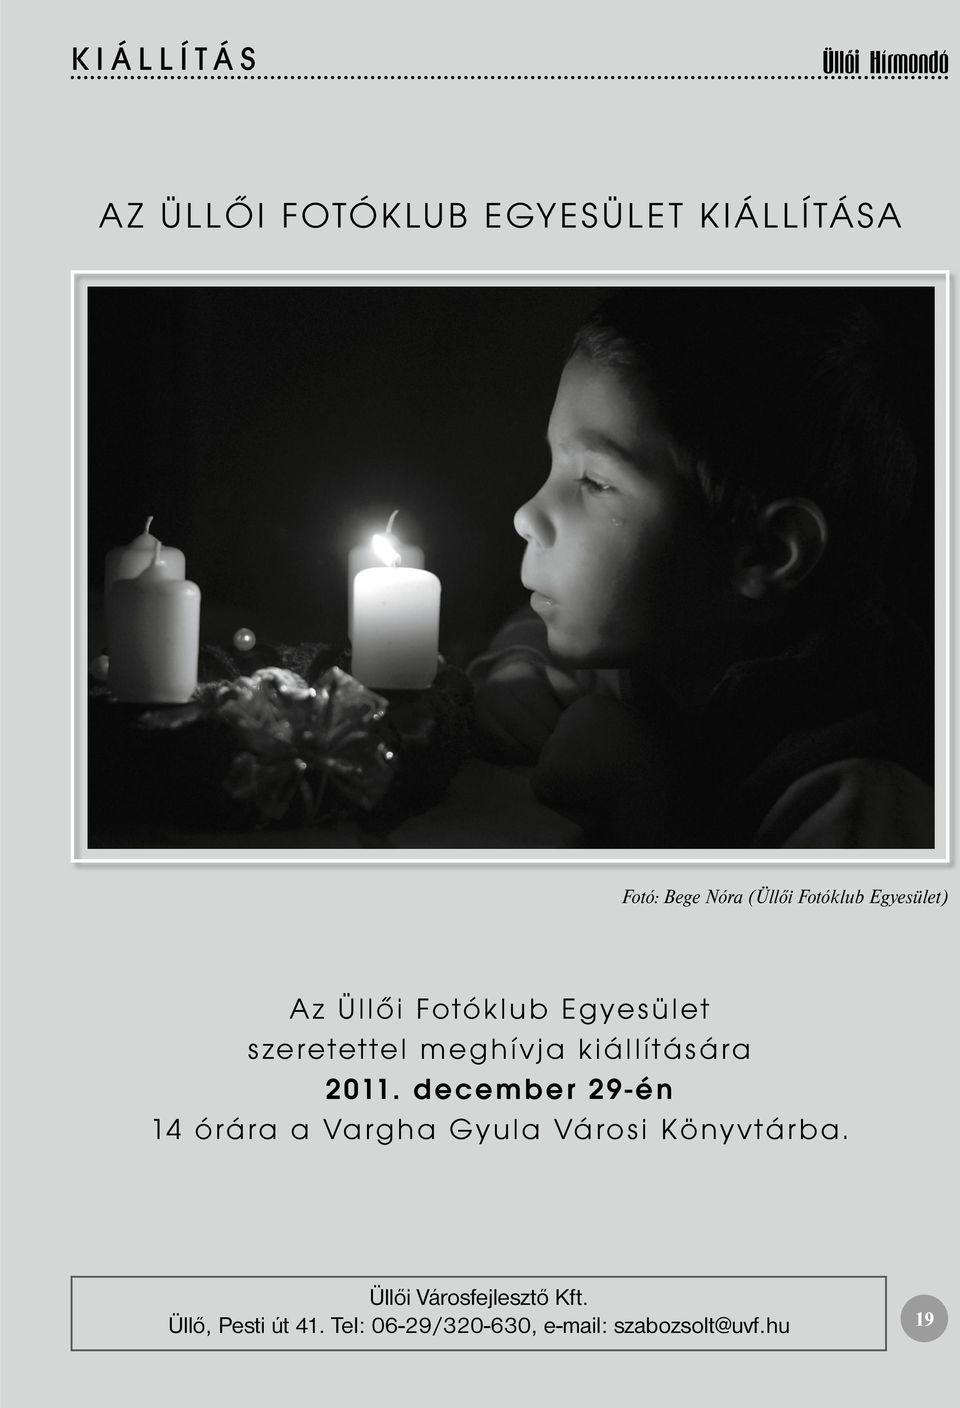 kiállítására 2011. december 29-én 14 órára a Vargha Gyula Városi Könyvtárba.